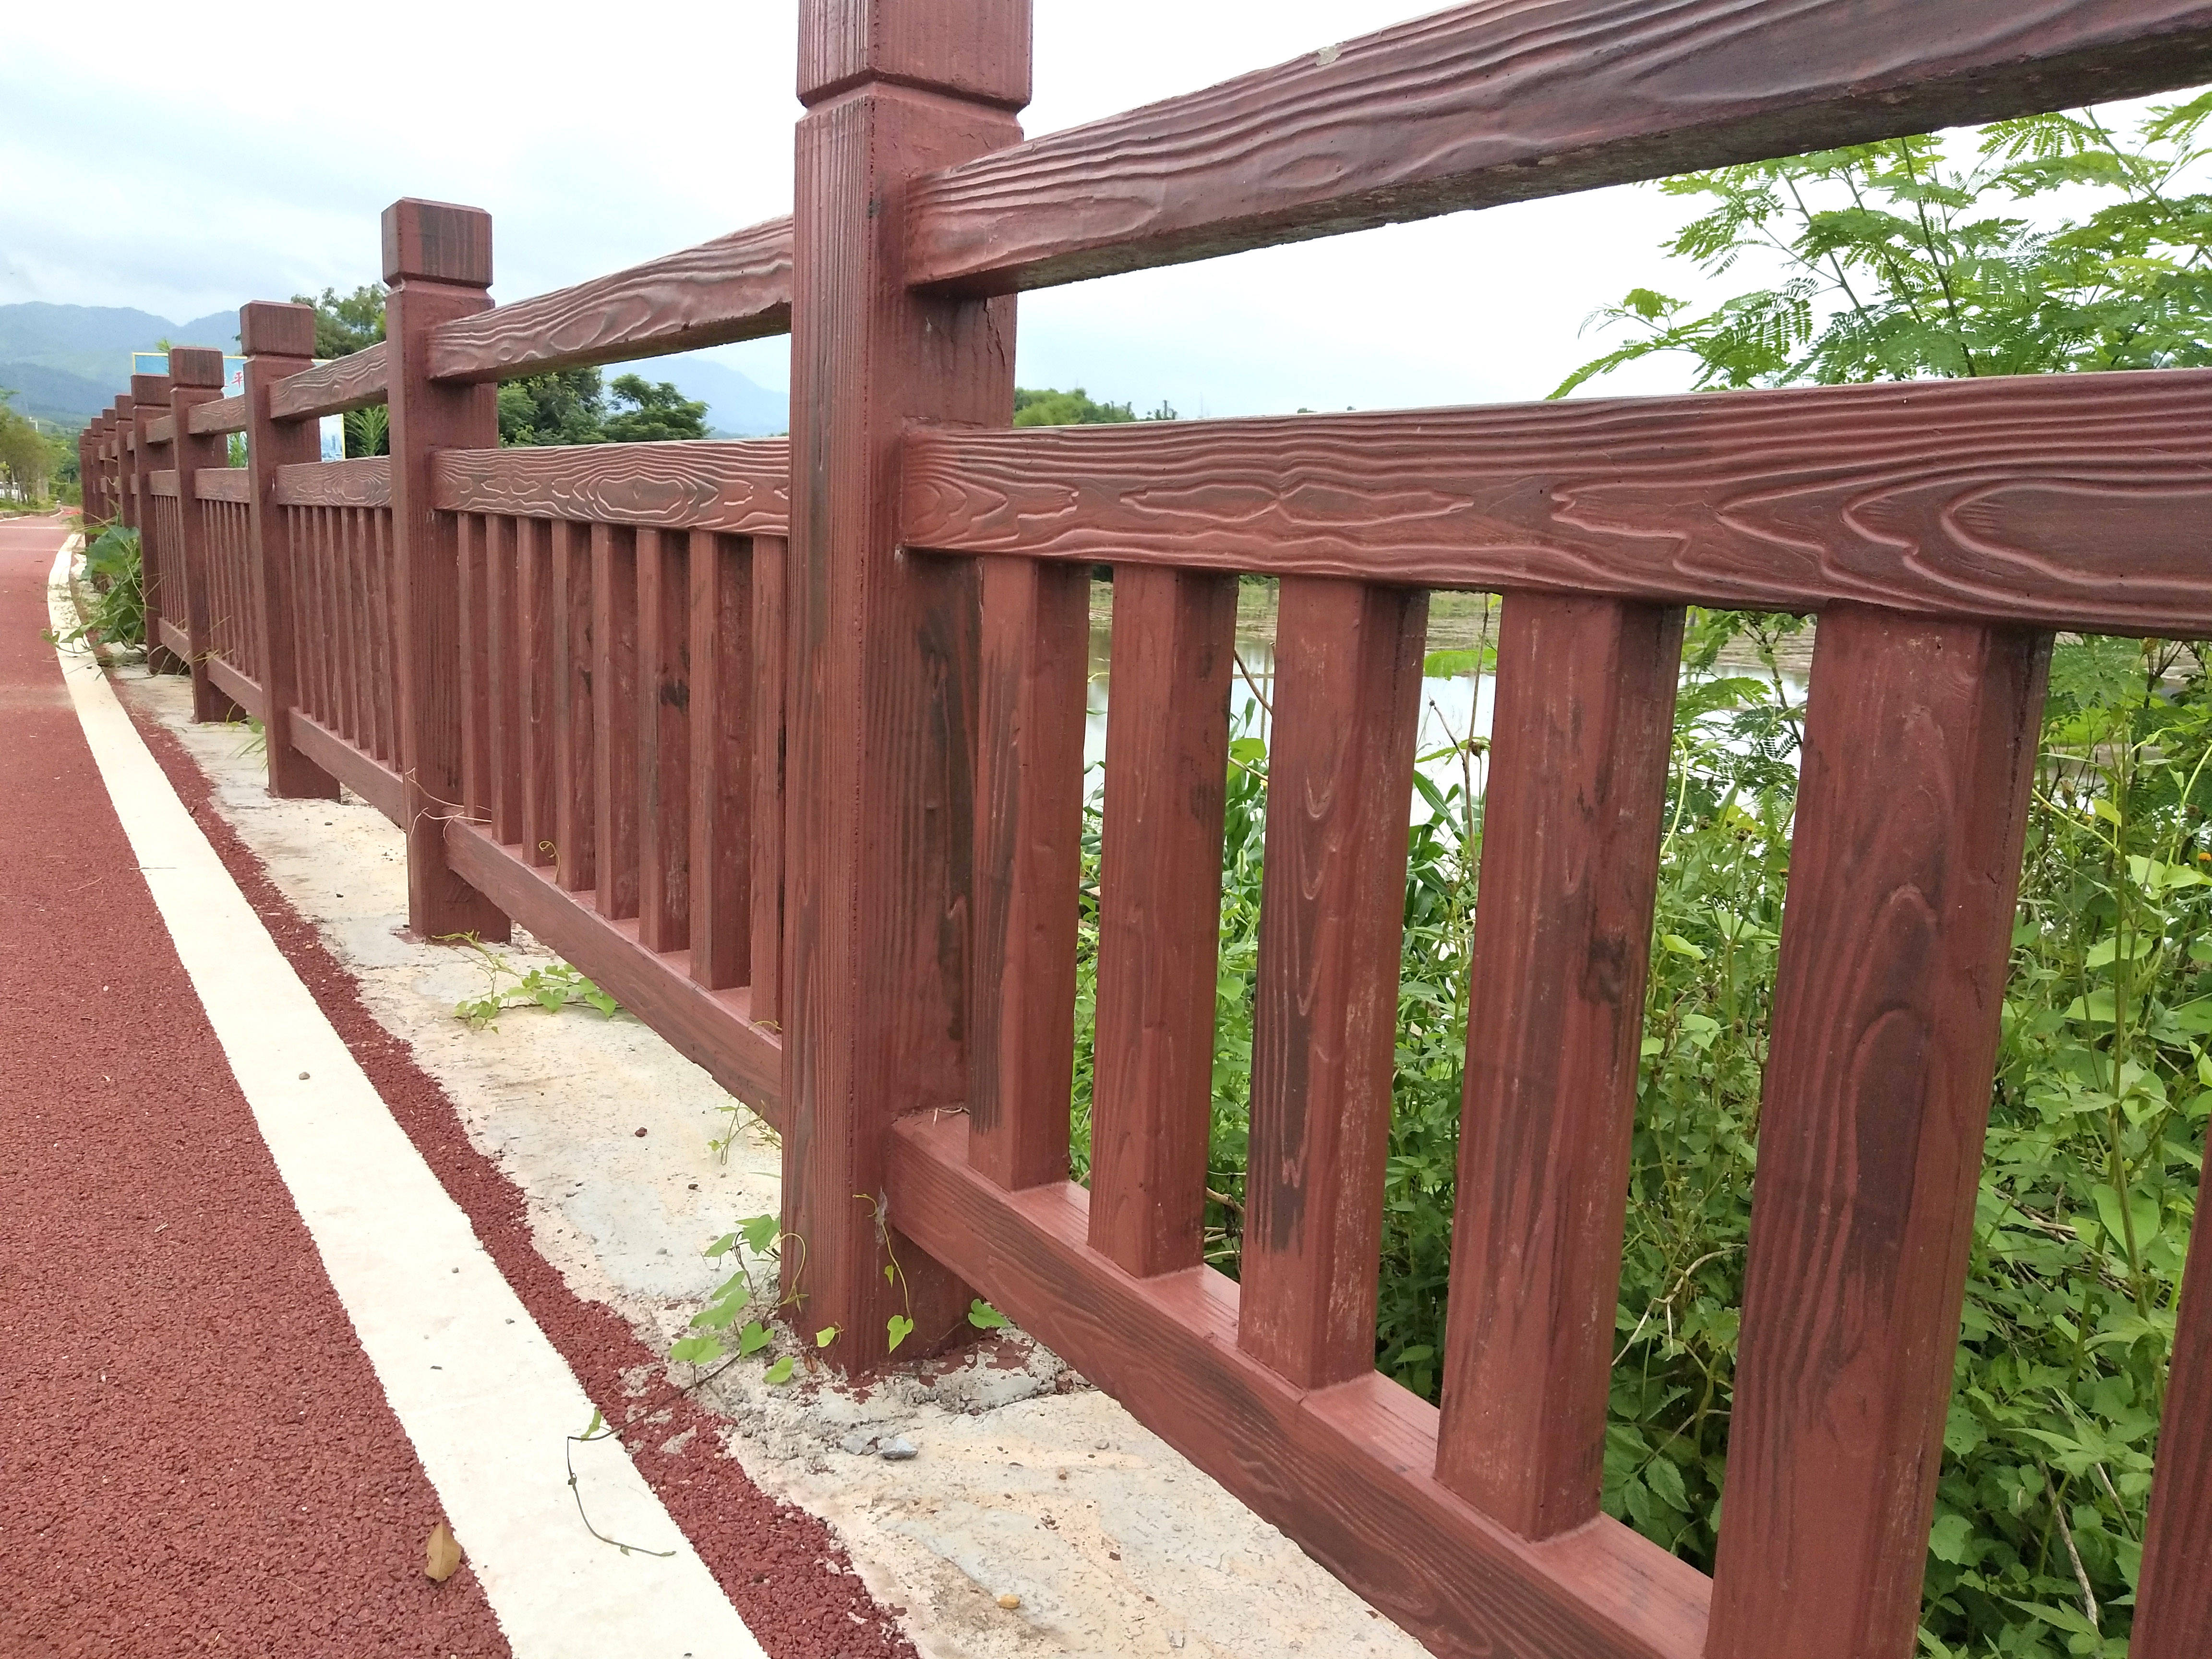 流程广东佛山湿地公园混凝土仿木栏杆批发价格水泥仿木栏杆在广东广州